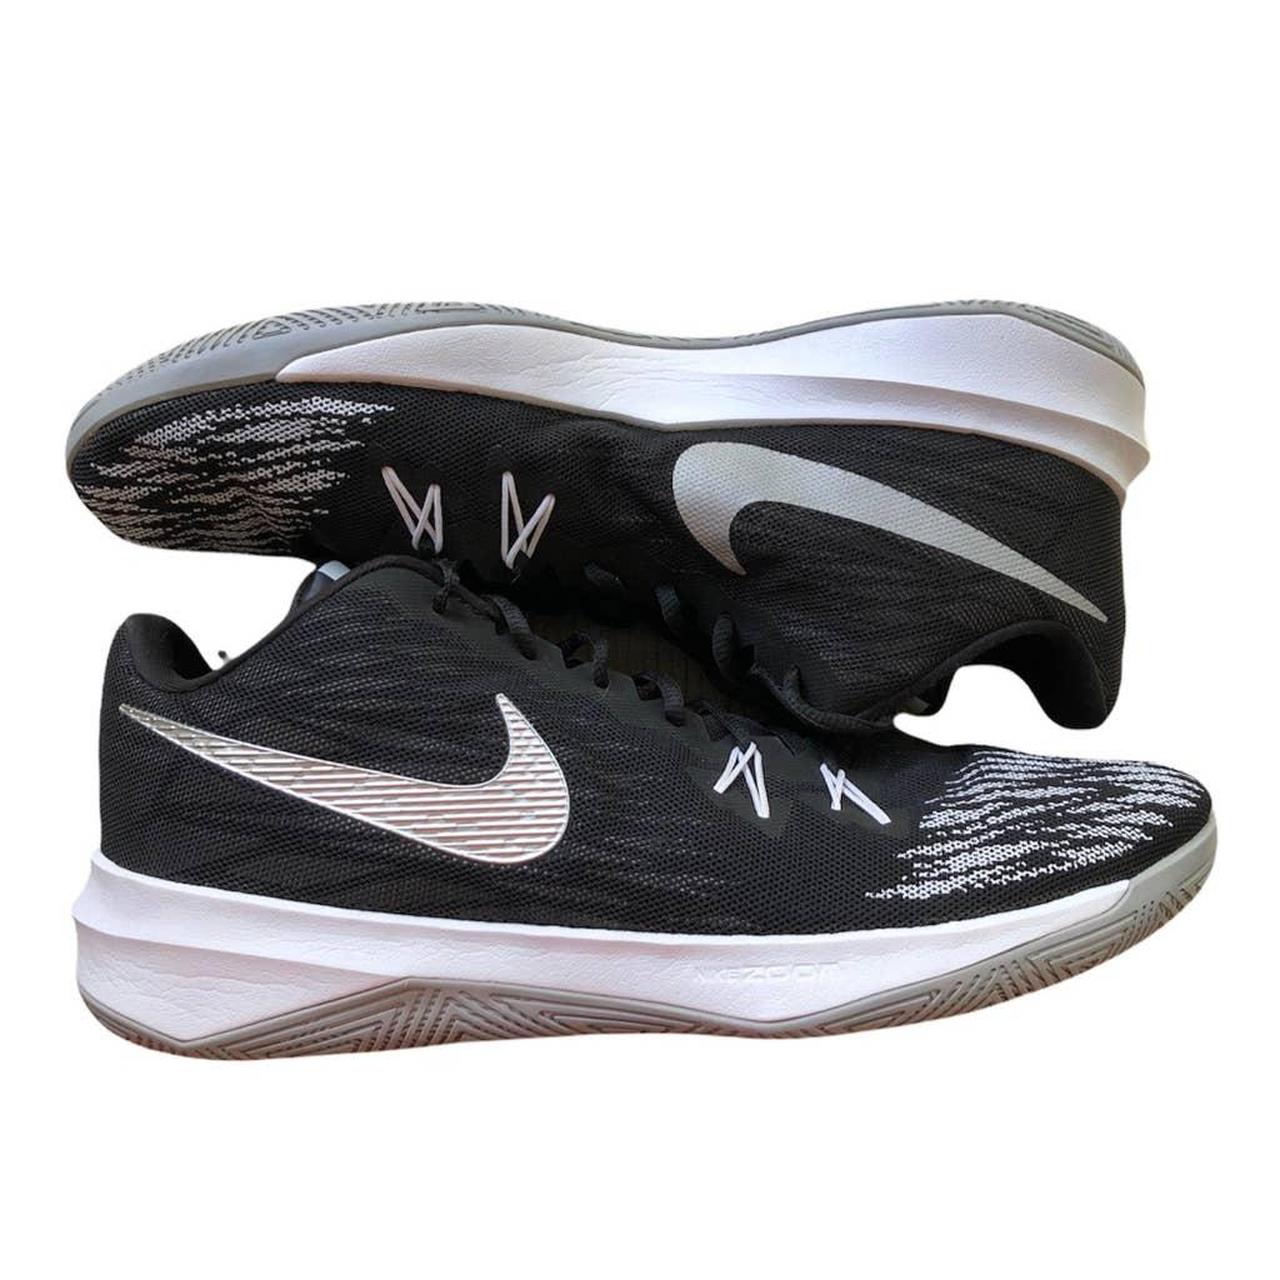 Nike Zoom Evidence II Black Basketball Sneakers... - Depop